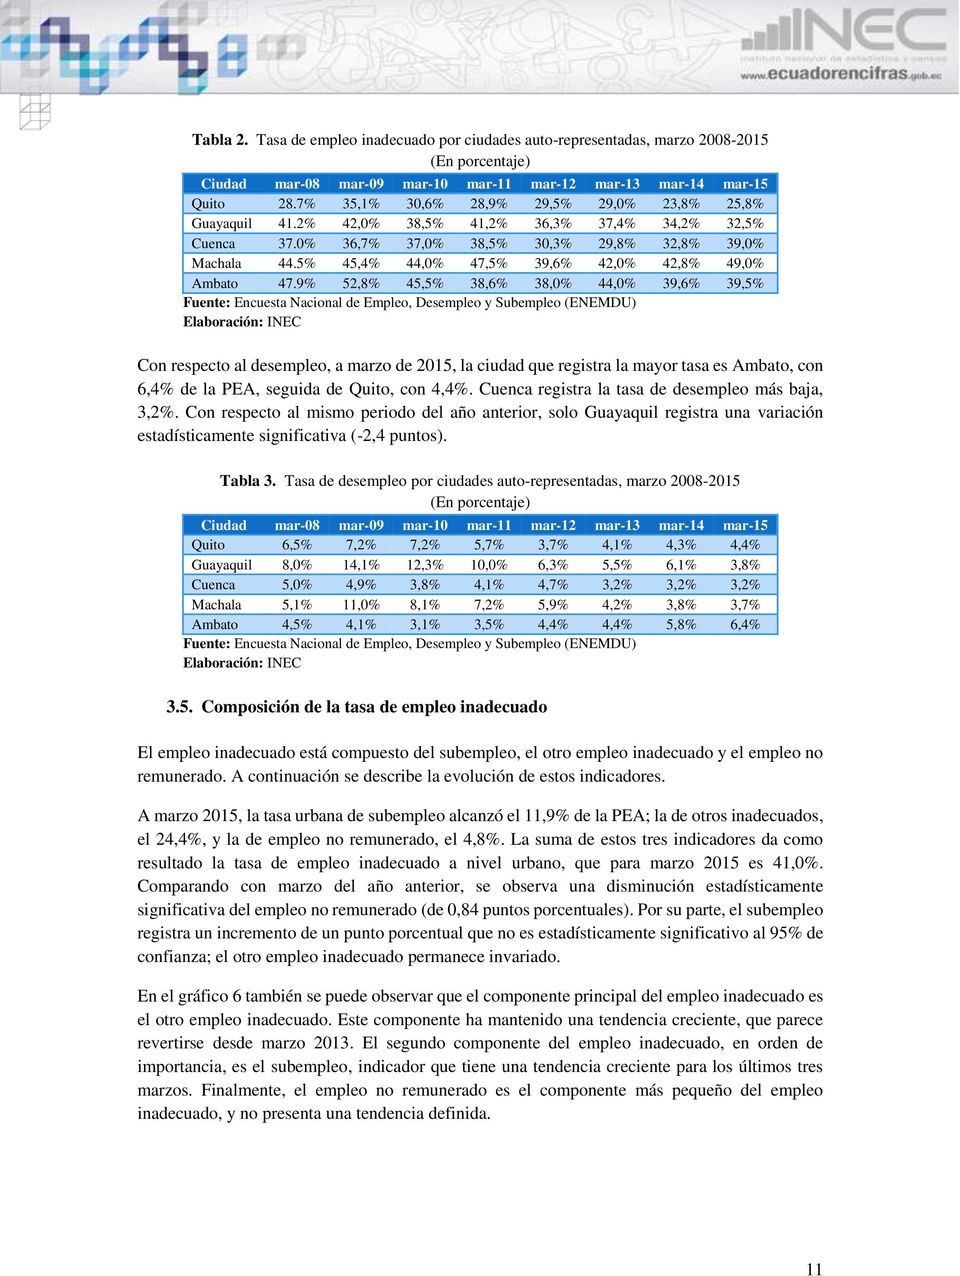 9% 52,8% 45,5% 38,6% 38,0% 44,0% 39,6% 39,5% Con respecto al desempleo, a marzo de 2015, la ciudad que registra la mayor tasa es Ambato, con 6,4% de la PEA, seguida de Quito, con 4,4%.